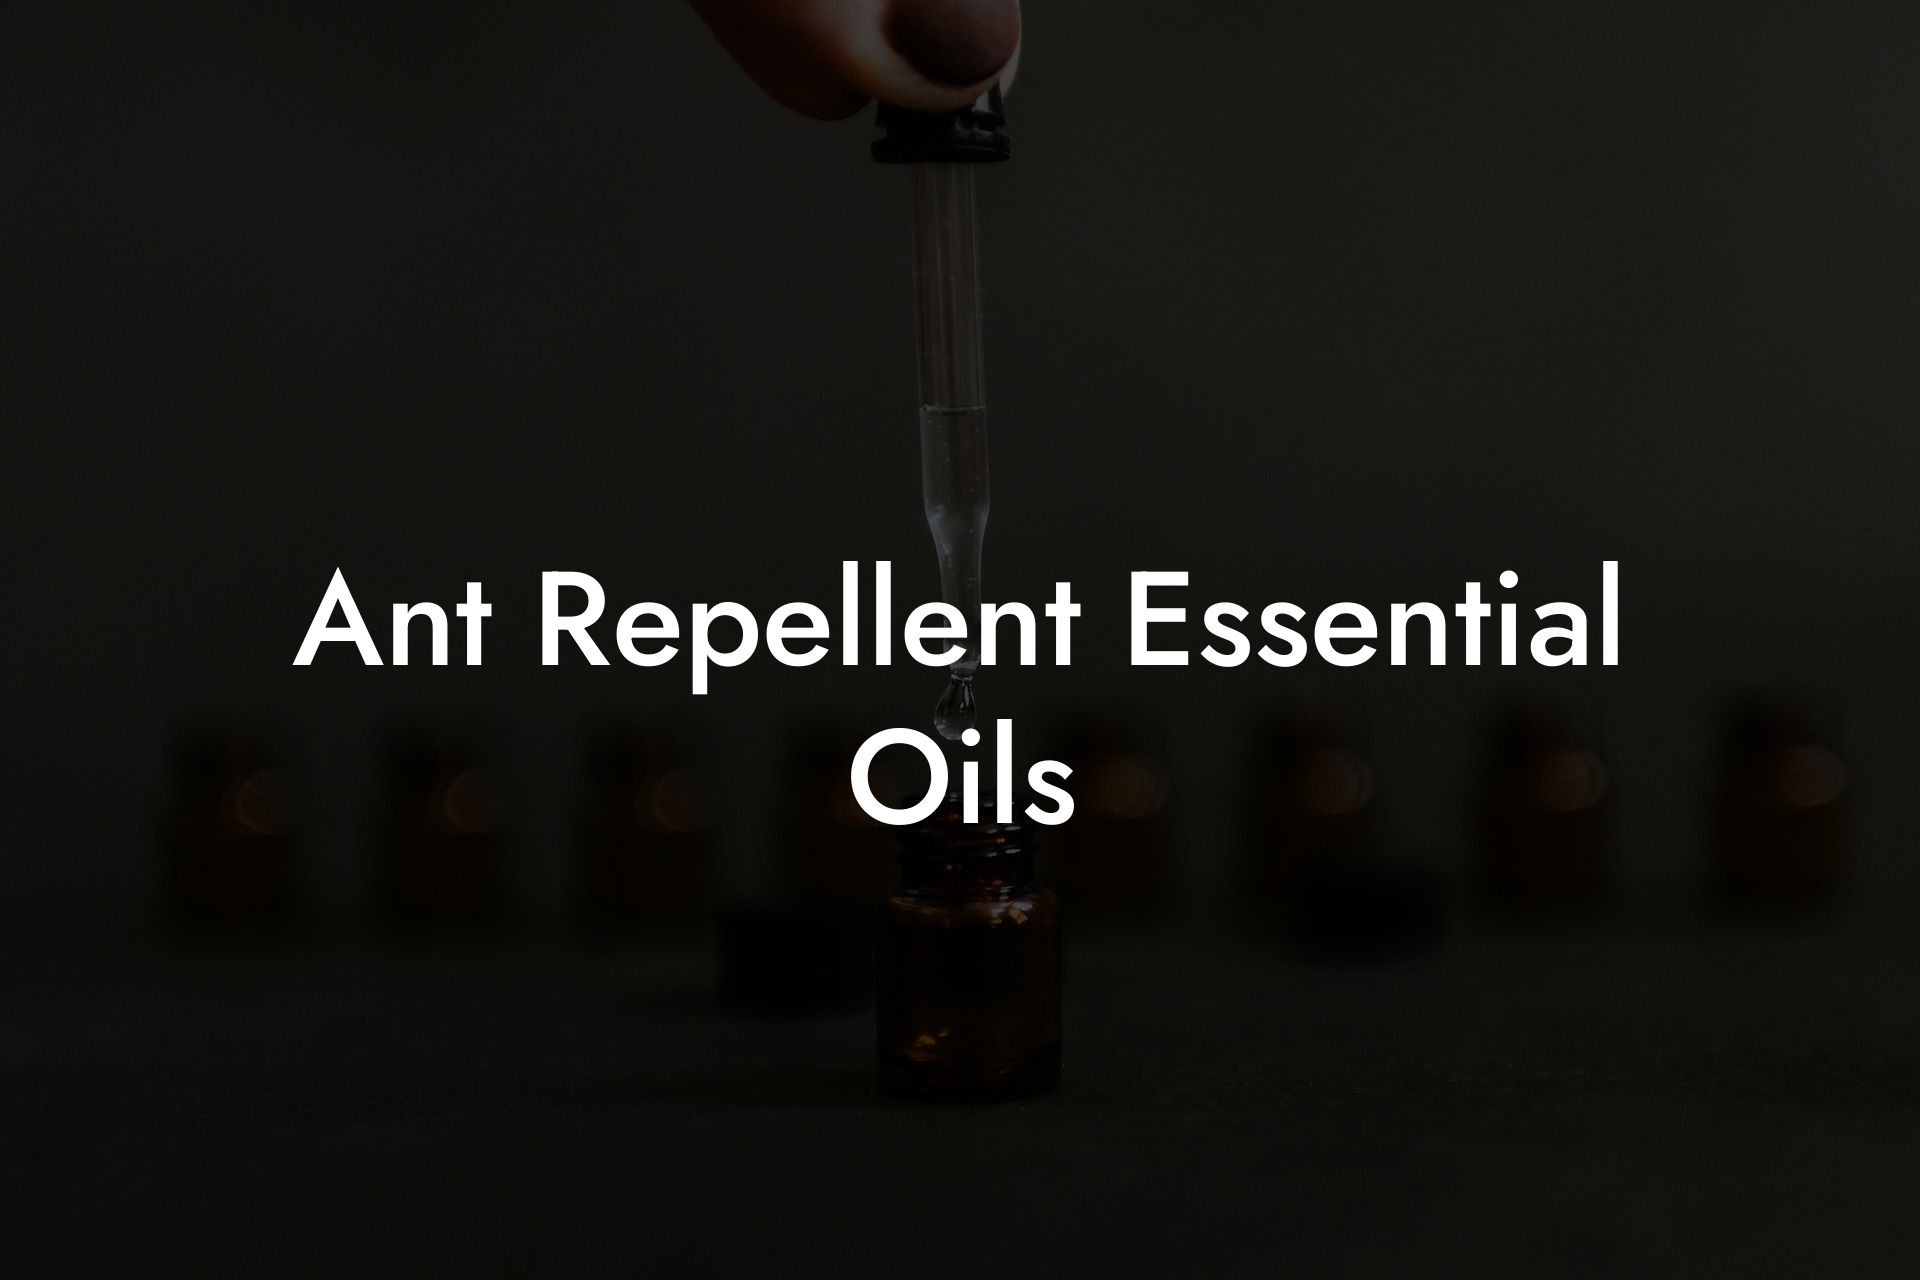 Ant Repellent Essential Oils